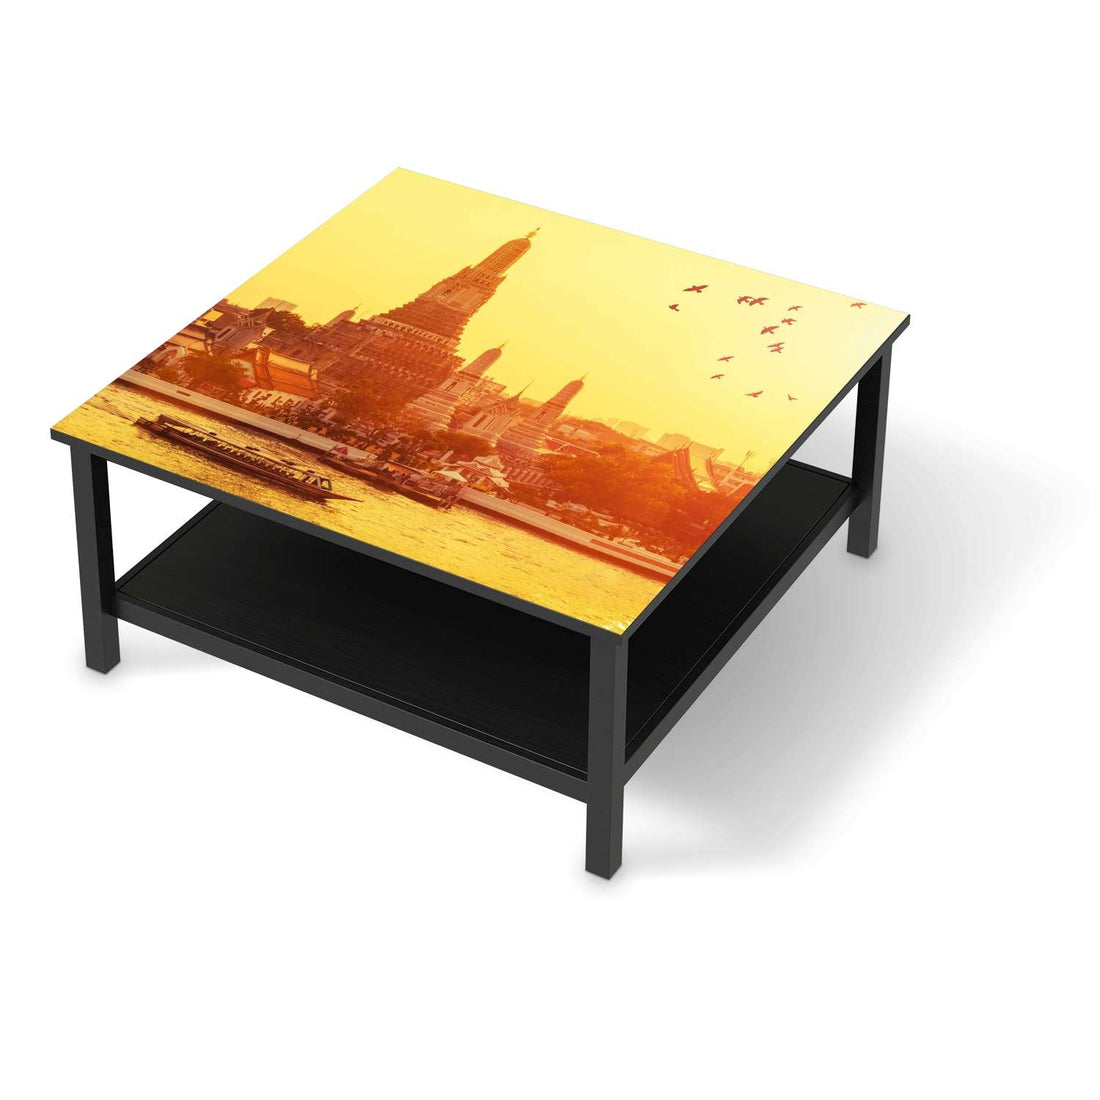 Klebefolie für Möbel Bangkok Sunset - IKEA Hemnes Couchtisch 90x90 cm - schwarz